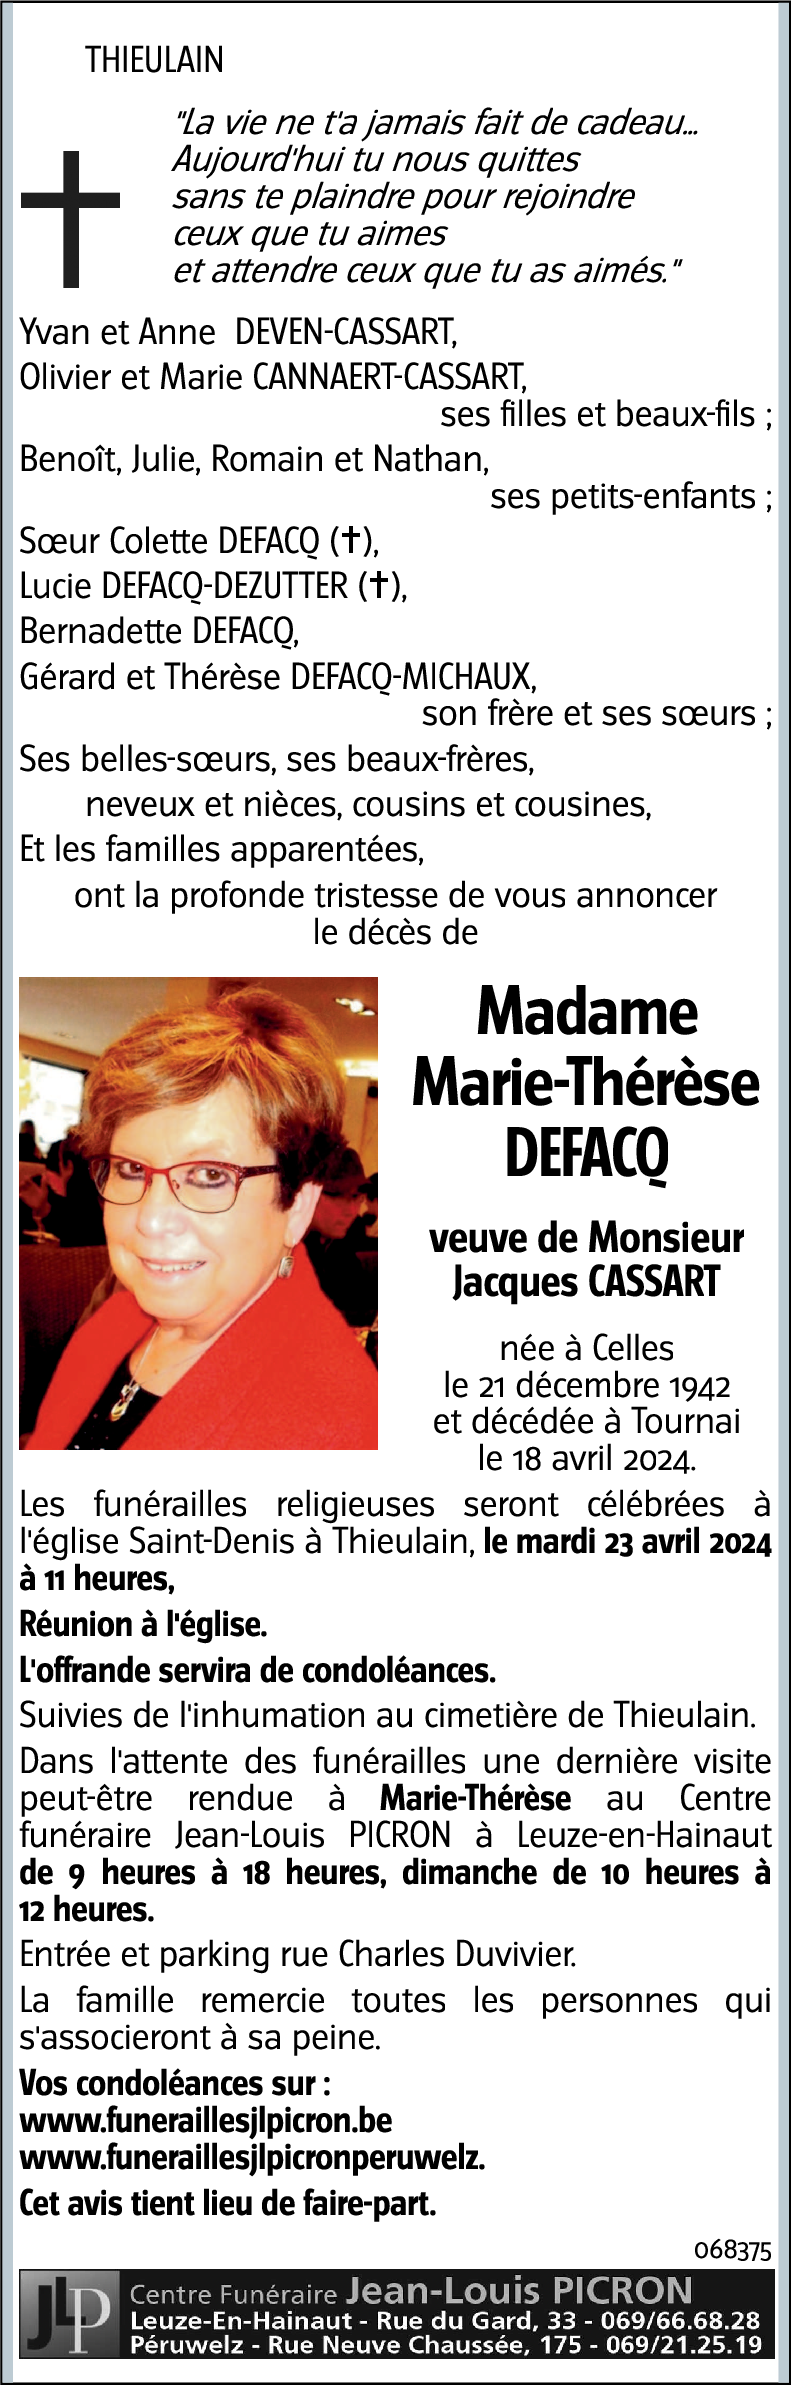 DEFACQ Marie-Thérèse